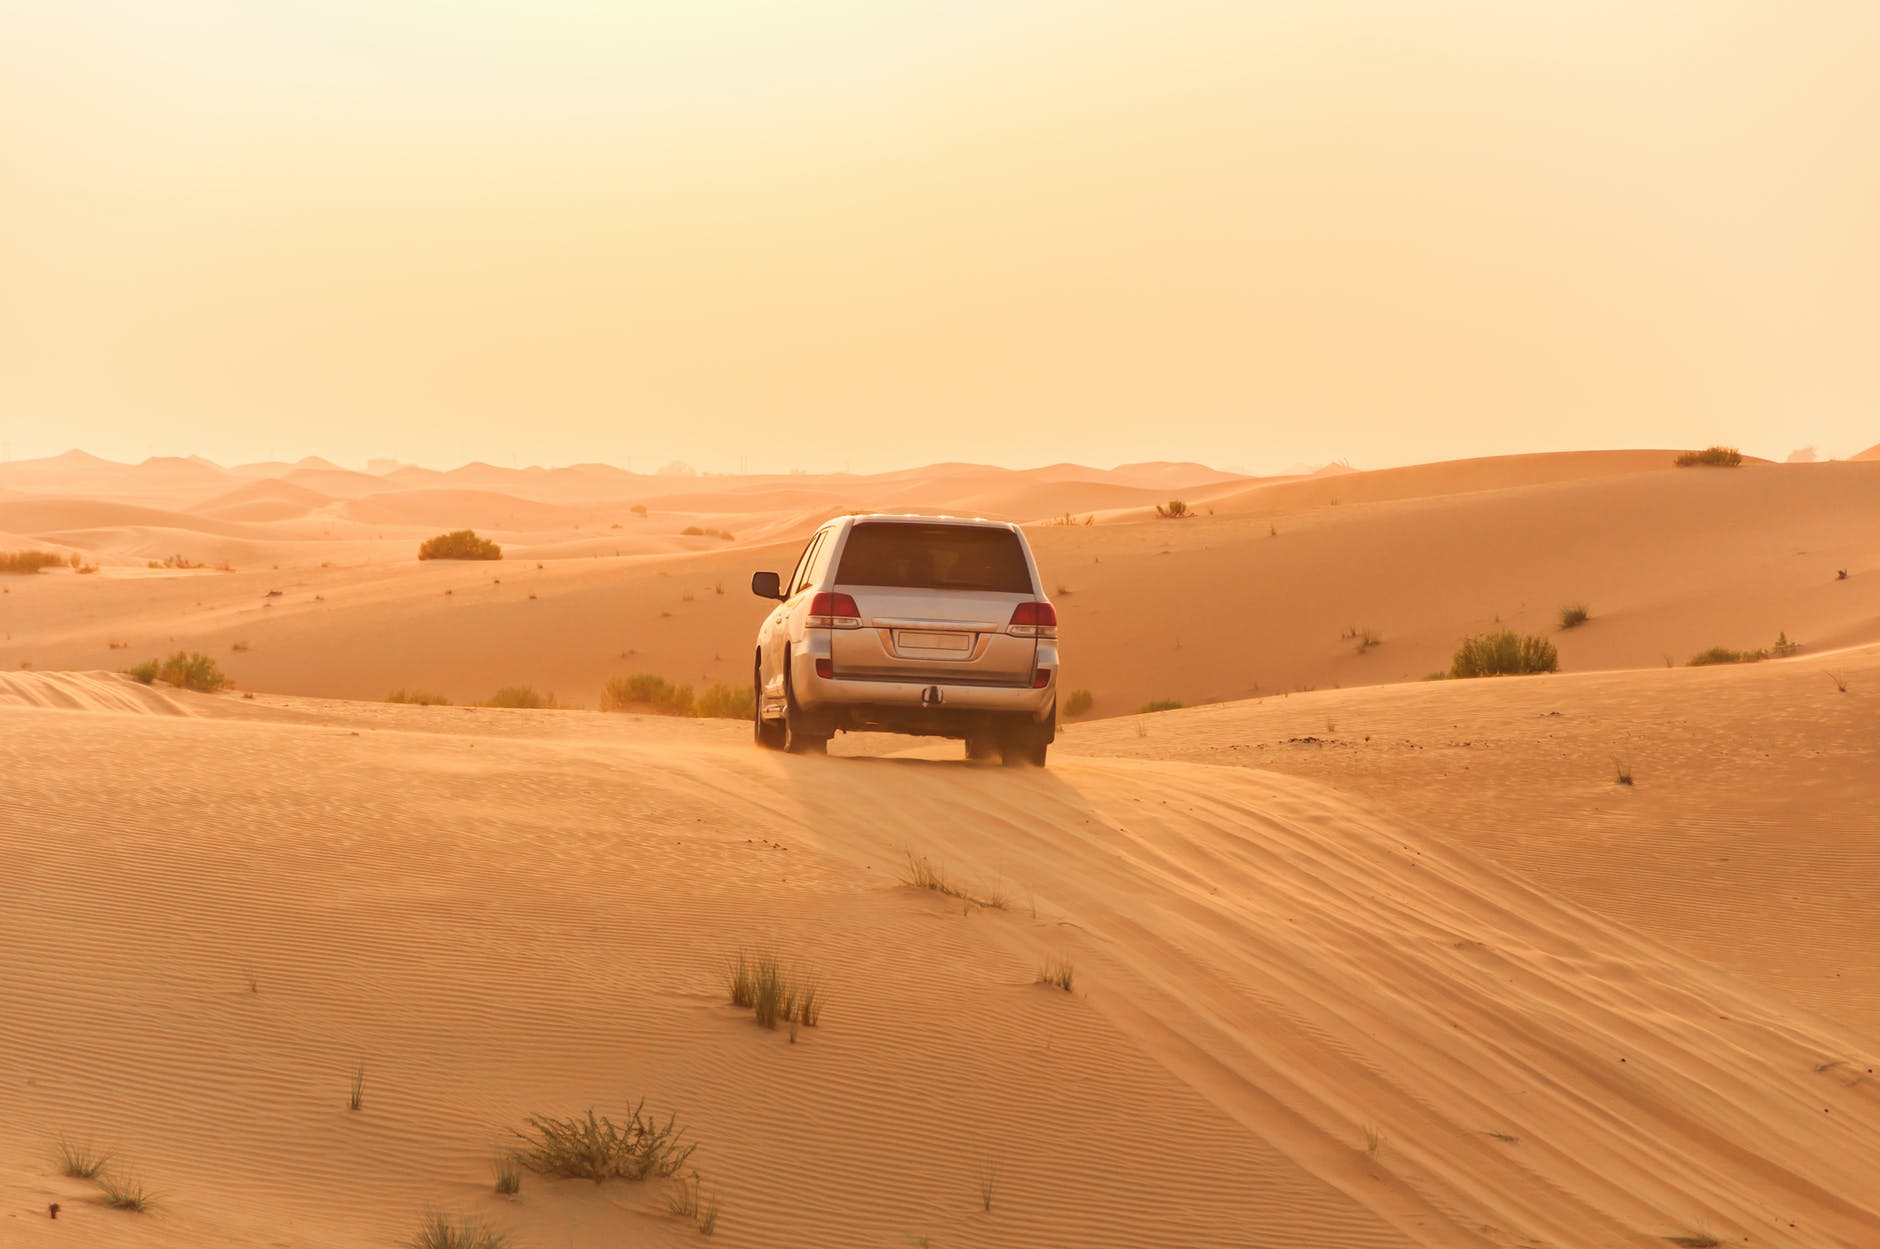 Tips for desert driving in Qatar